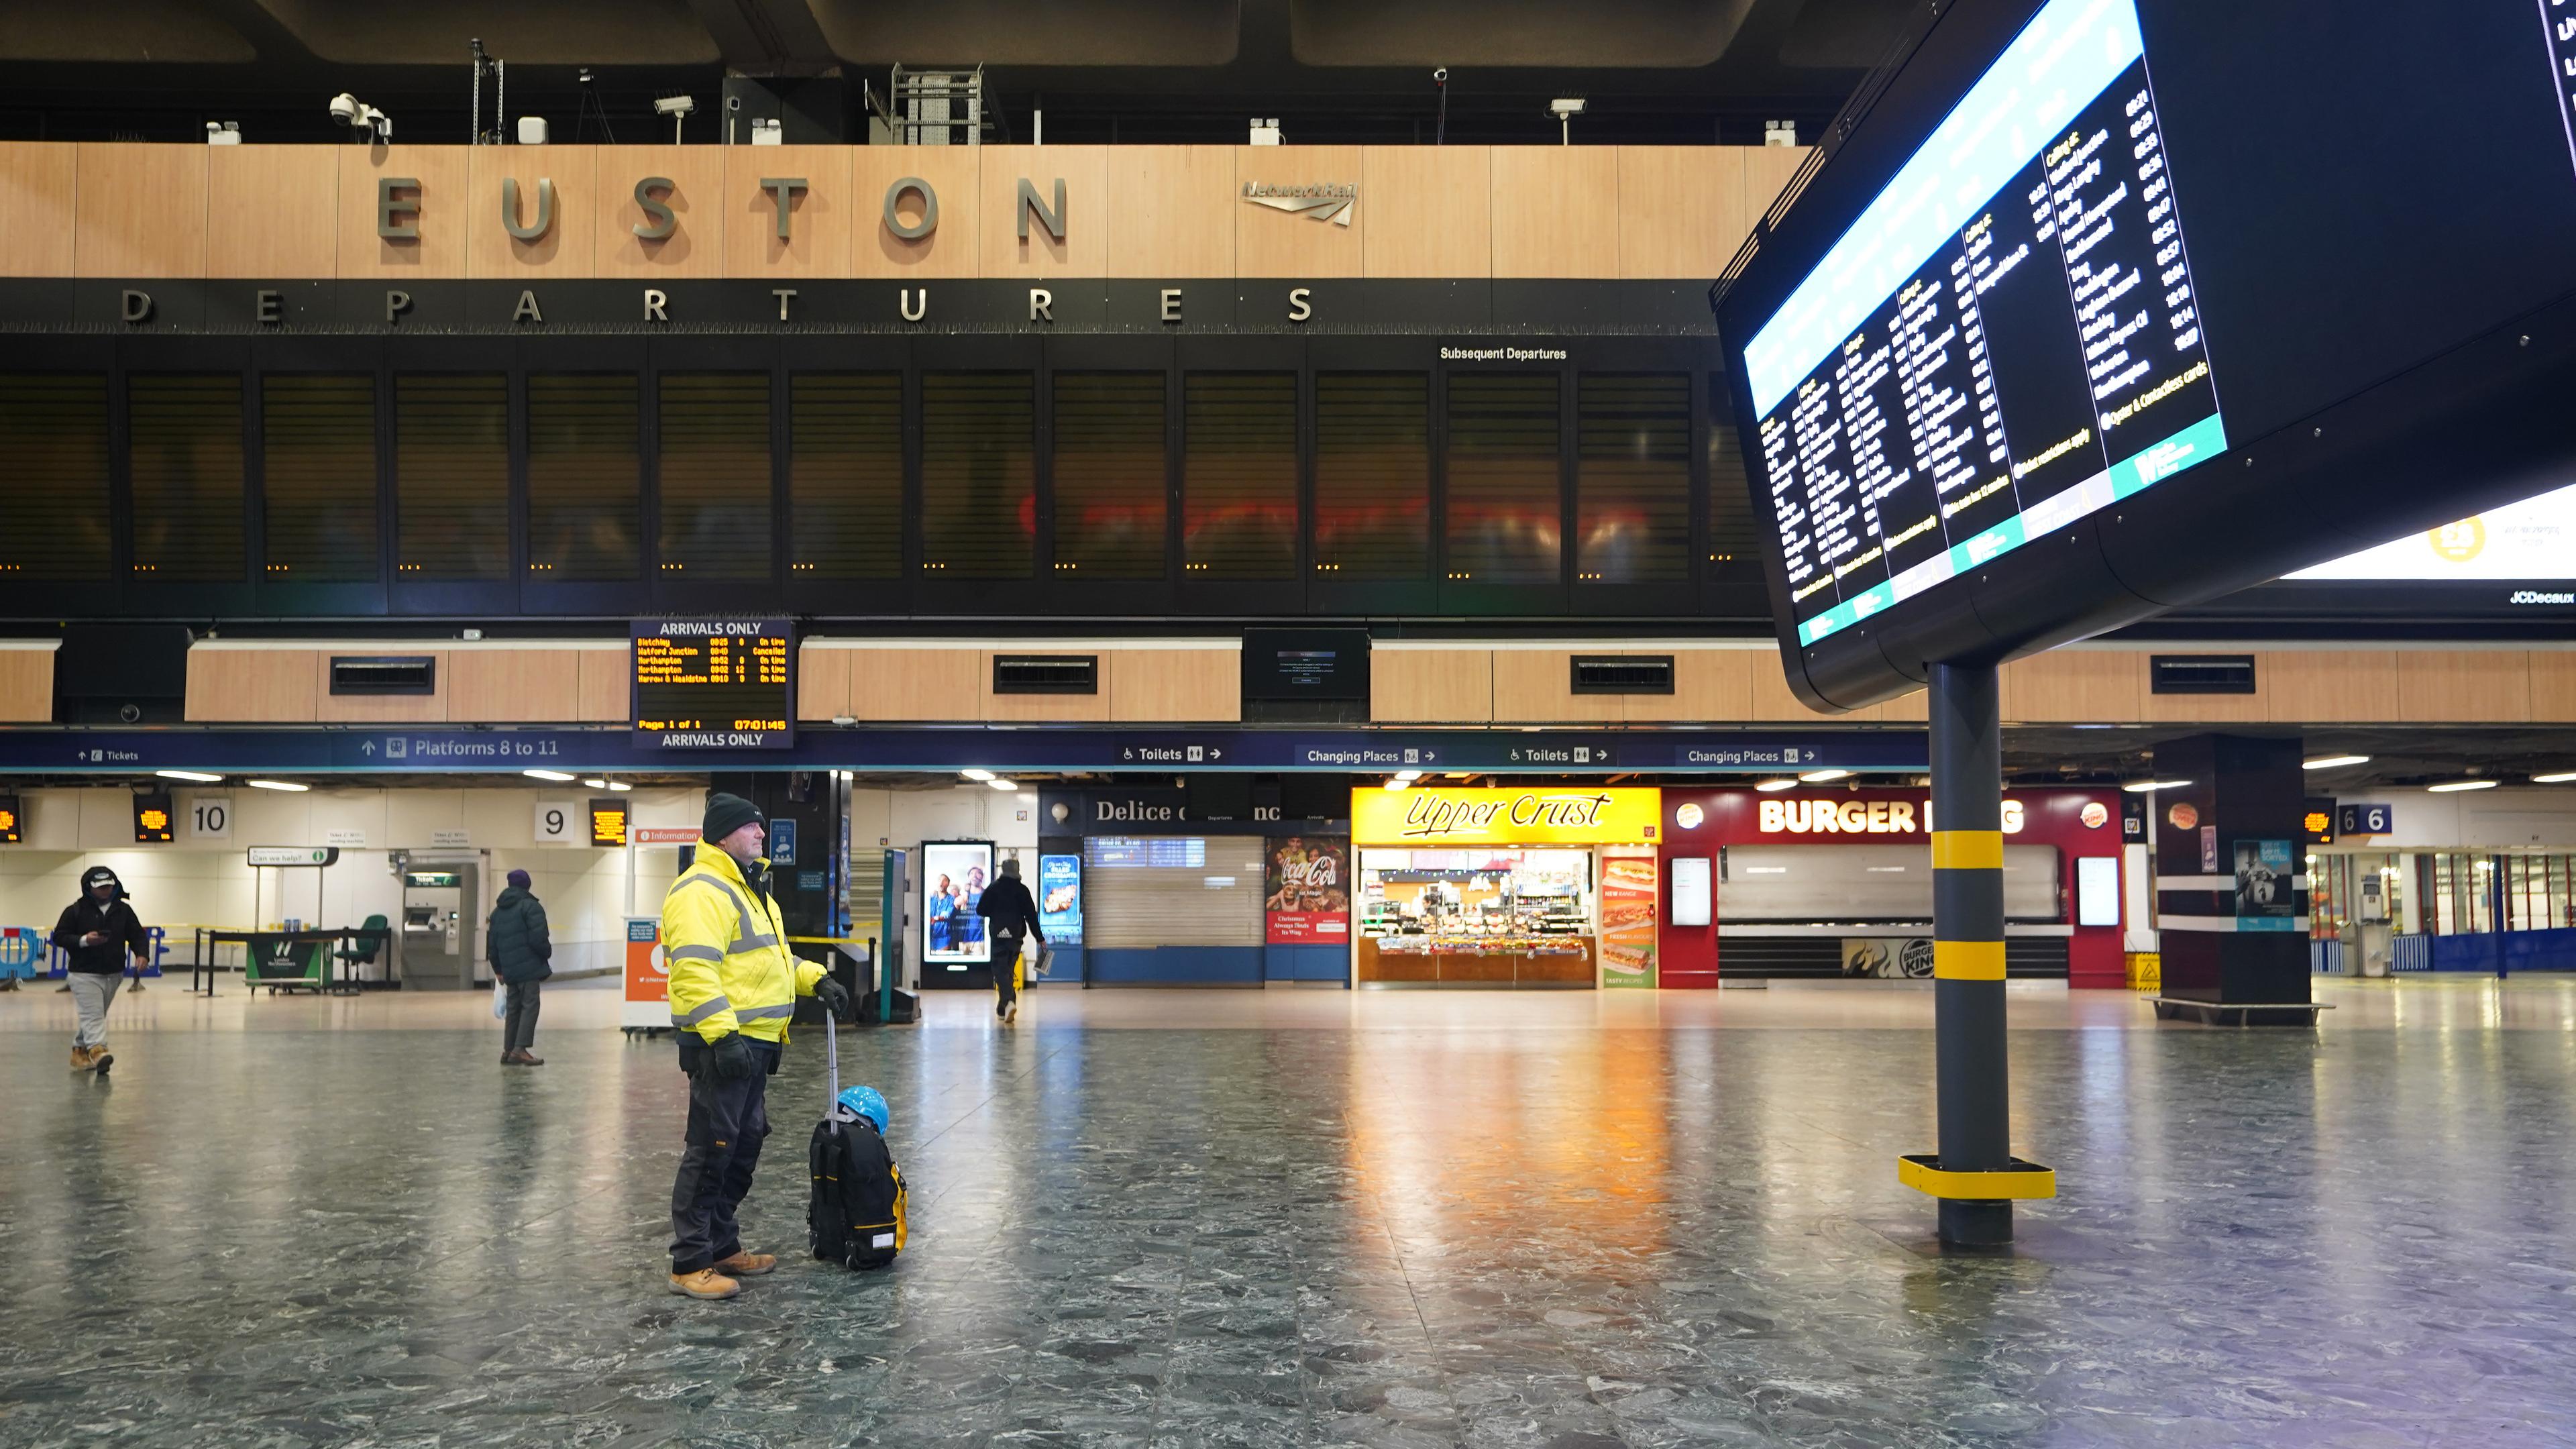 Ein Mann betrachtet die Abfahrtstafel im Bahnhof Euston in London während eines Streiks, aufgenommen am 14.12.2022